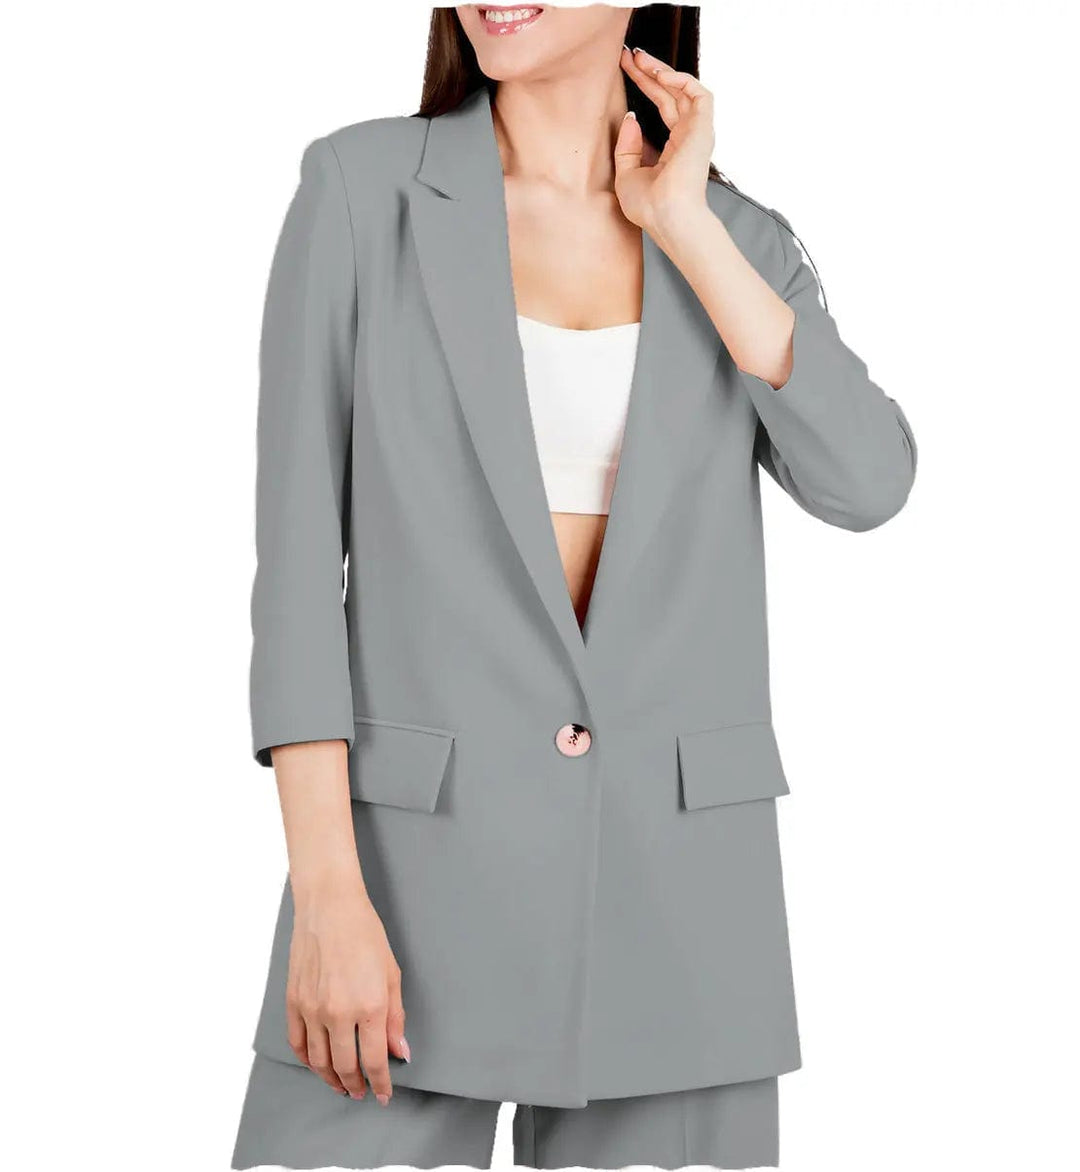 solovedress 2 Pieces Peak Lapel Women Suit (Blazer+Pants)